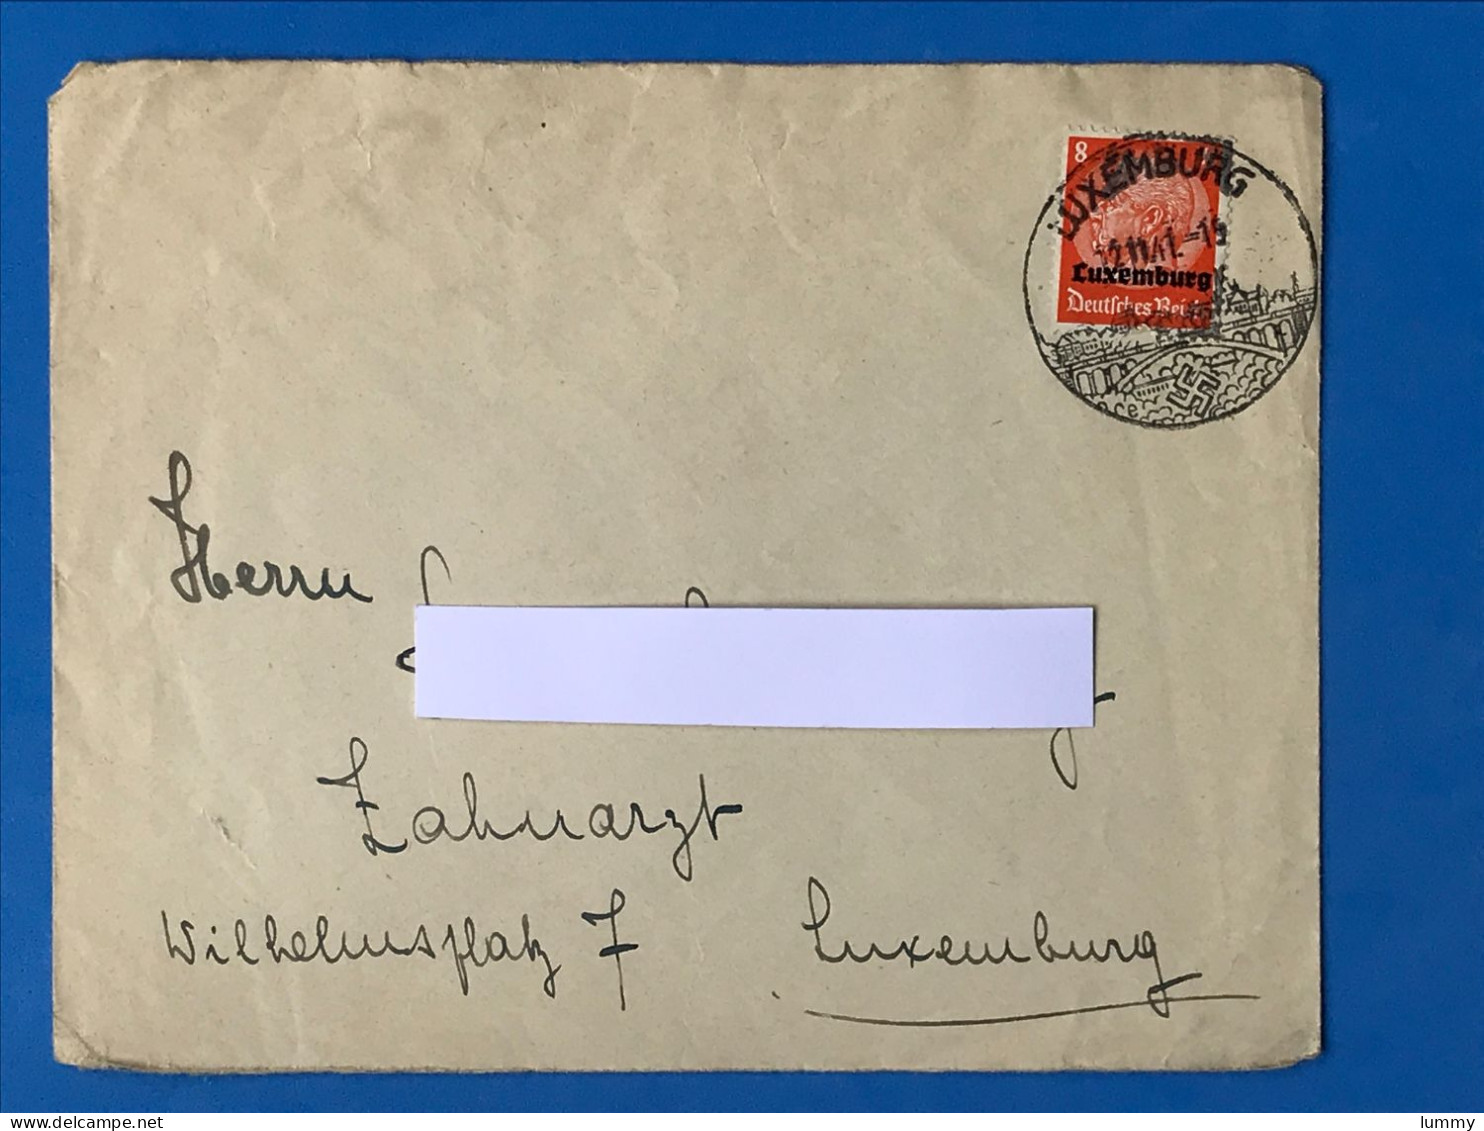 Luxembourg - Enveloppe - Deutsches Reich - 12.11.41 -  Luxemburg Wk2 Ww2 Besatzung Militaria - 1940-1944 Deutsche Besatzung